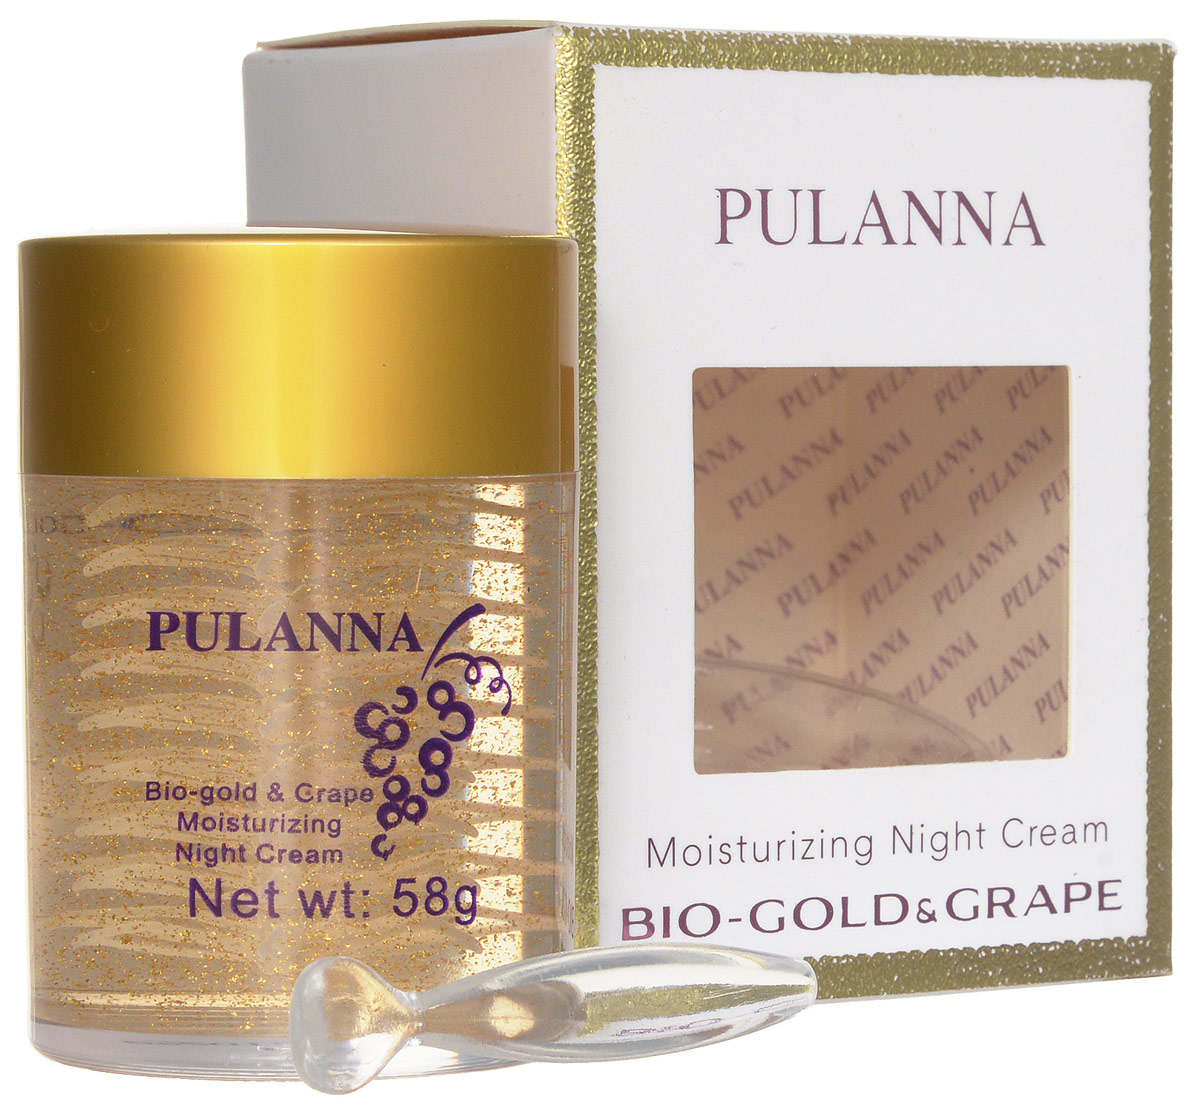 купить Pulanna Увлажняющий ночной крем на основе био-золота и винограда - Bio-gold &Grape Moisturizing Night Cream 58 г - заказ и доставка в Москве и Санкт-Петербурге